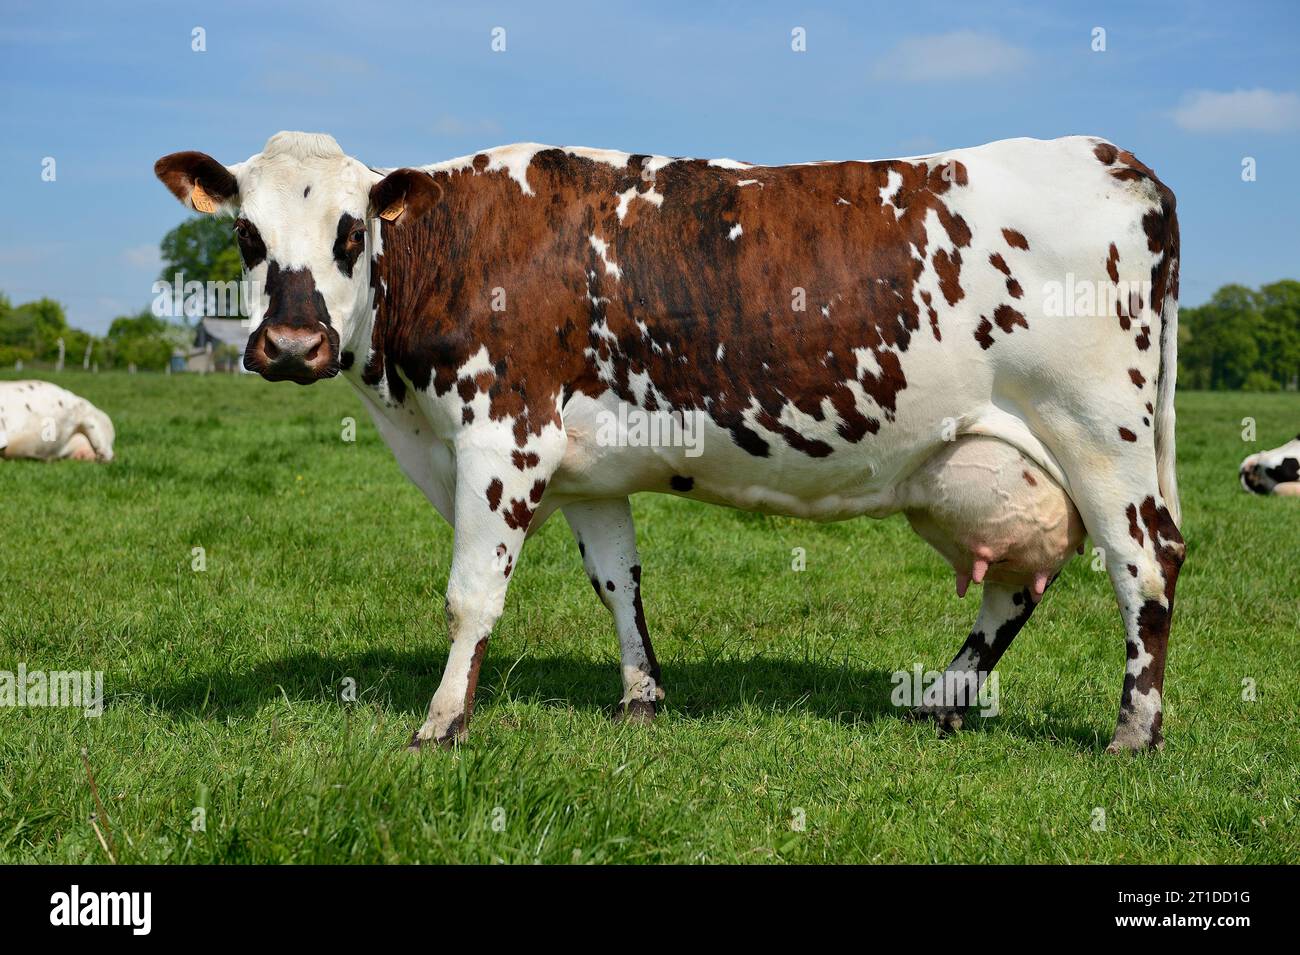 Vache broutant dans un pré, vache Normande (race). Vache laitière, ferme laitière Banque D'Images